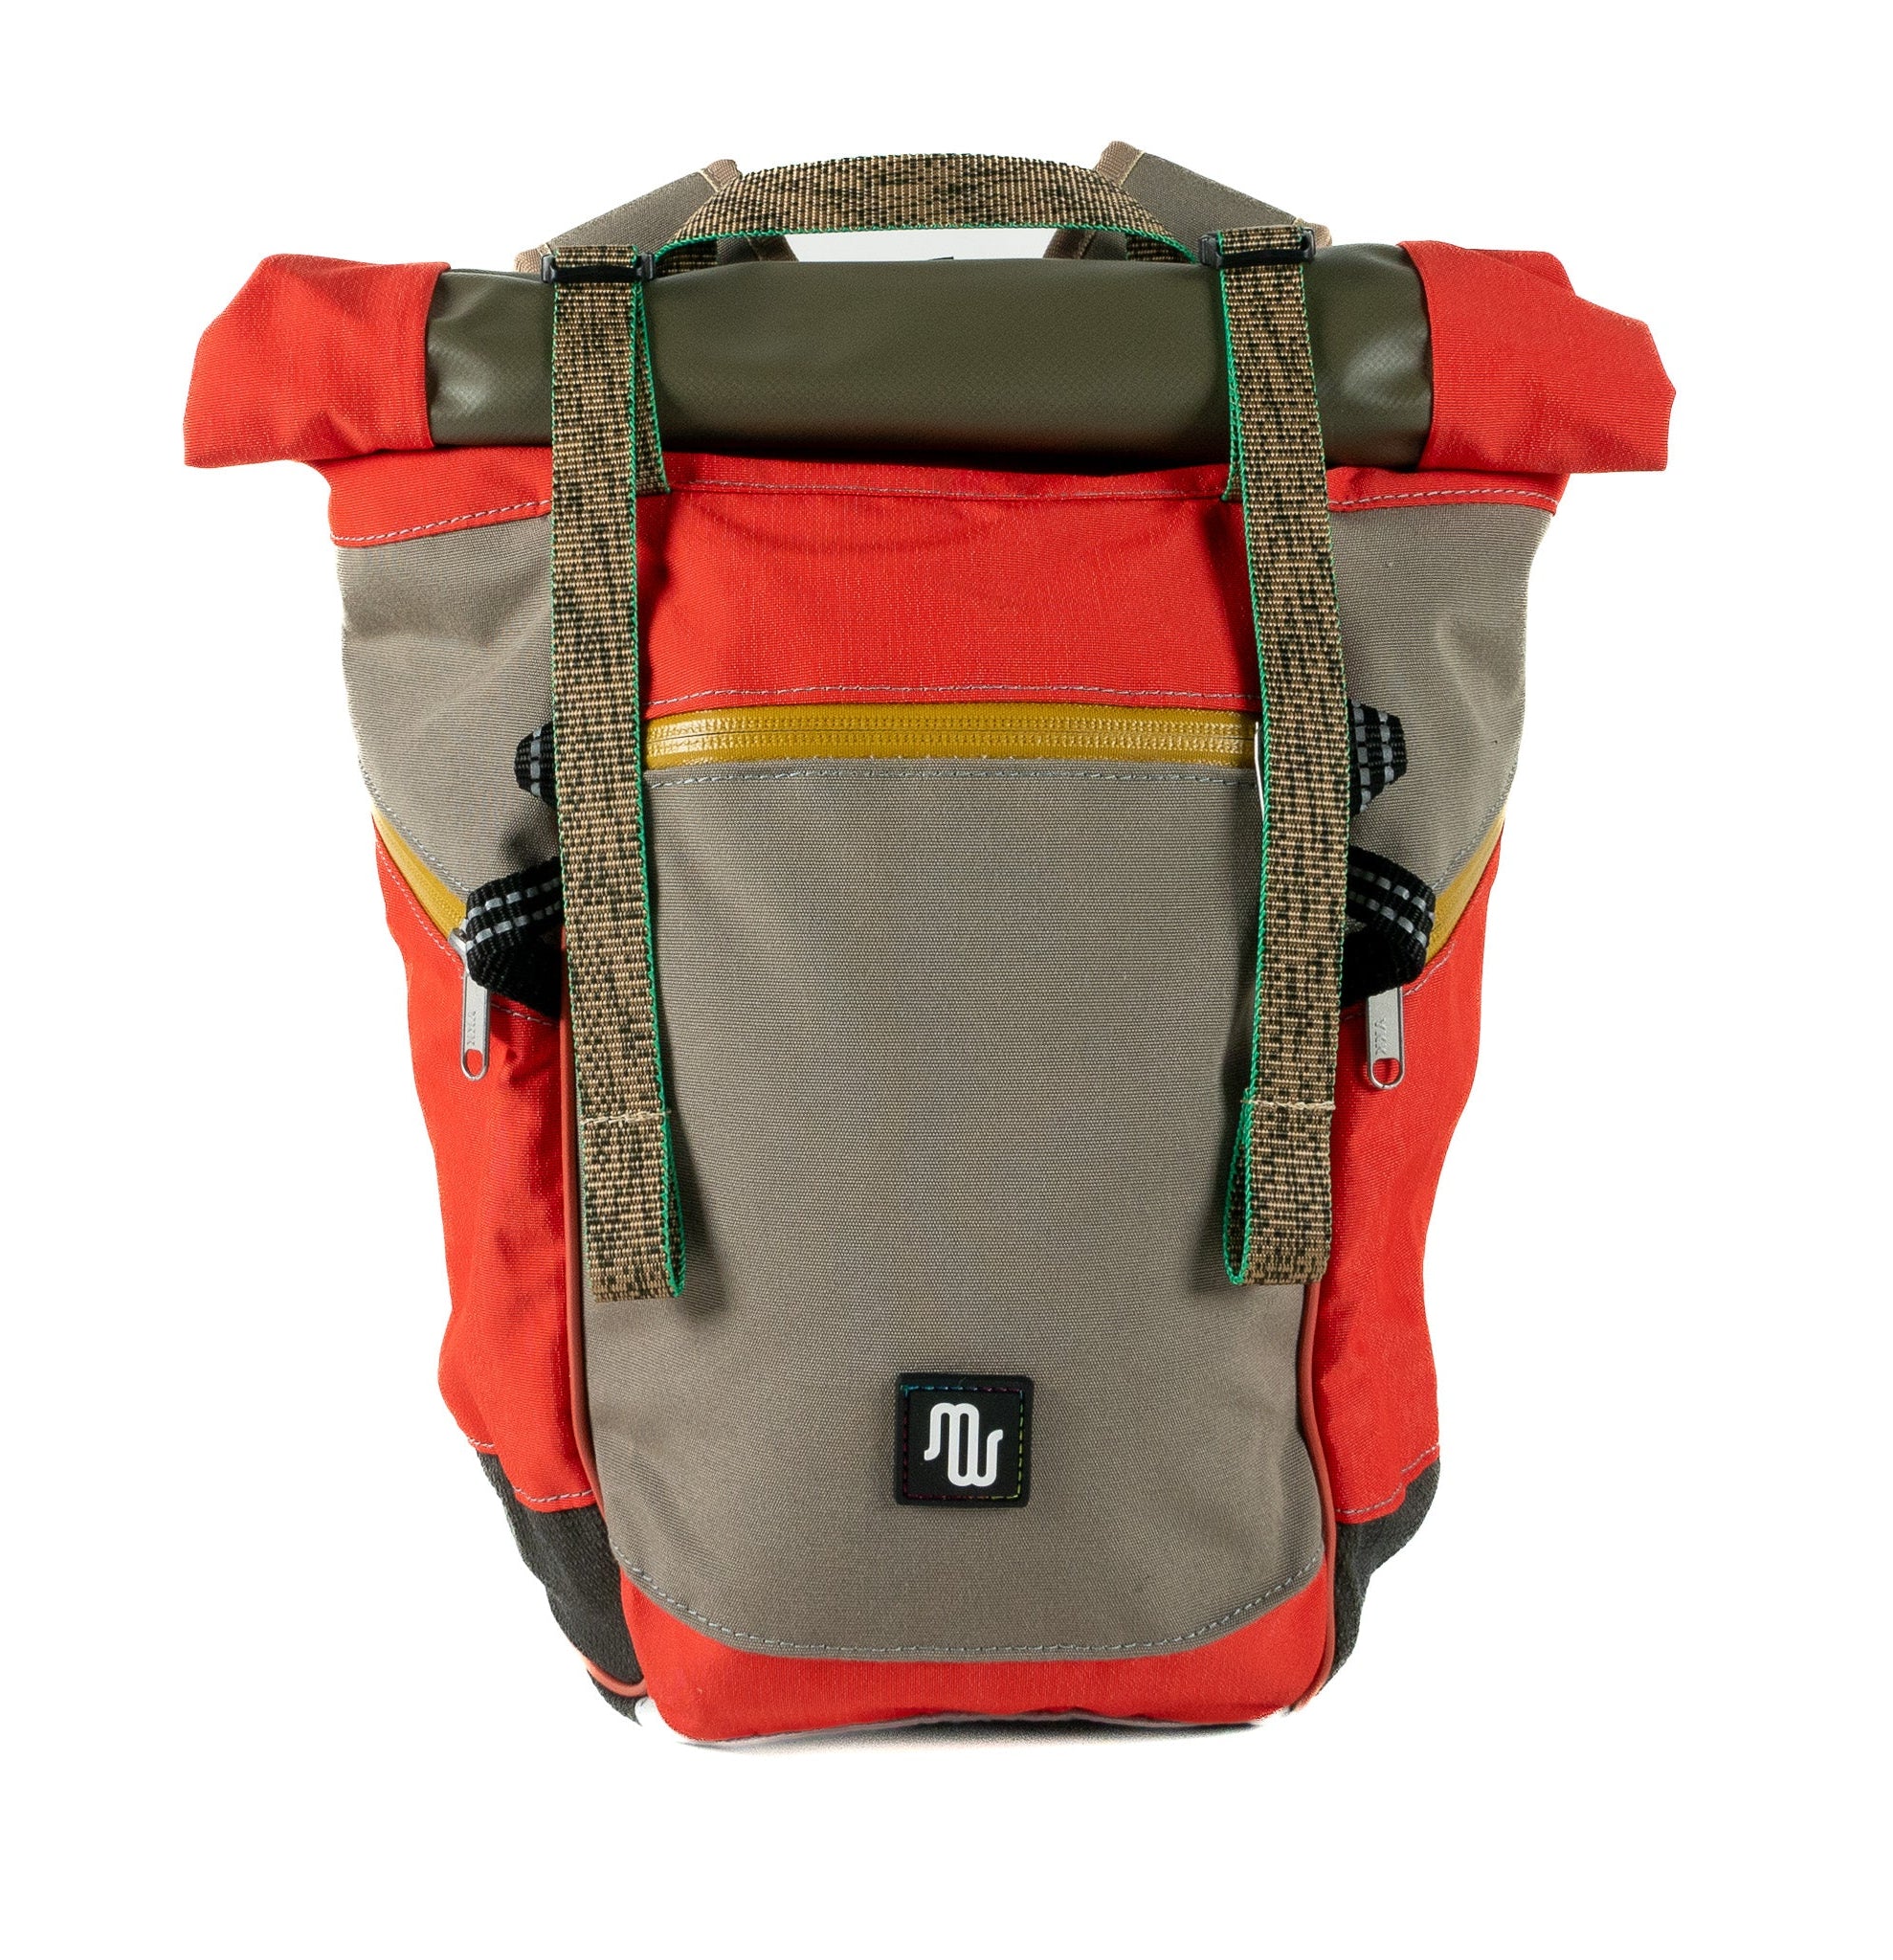 BUDDY No. 131 - Backpacks - medencebag